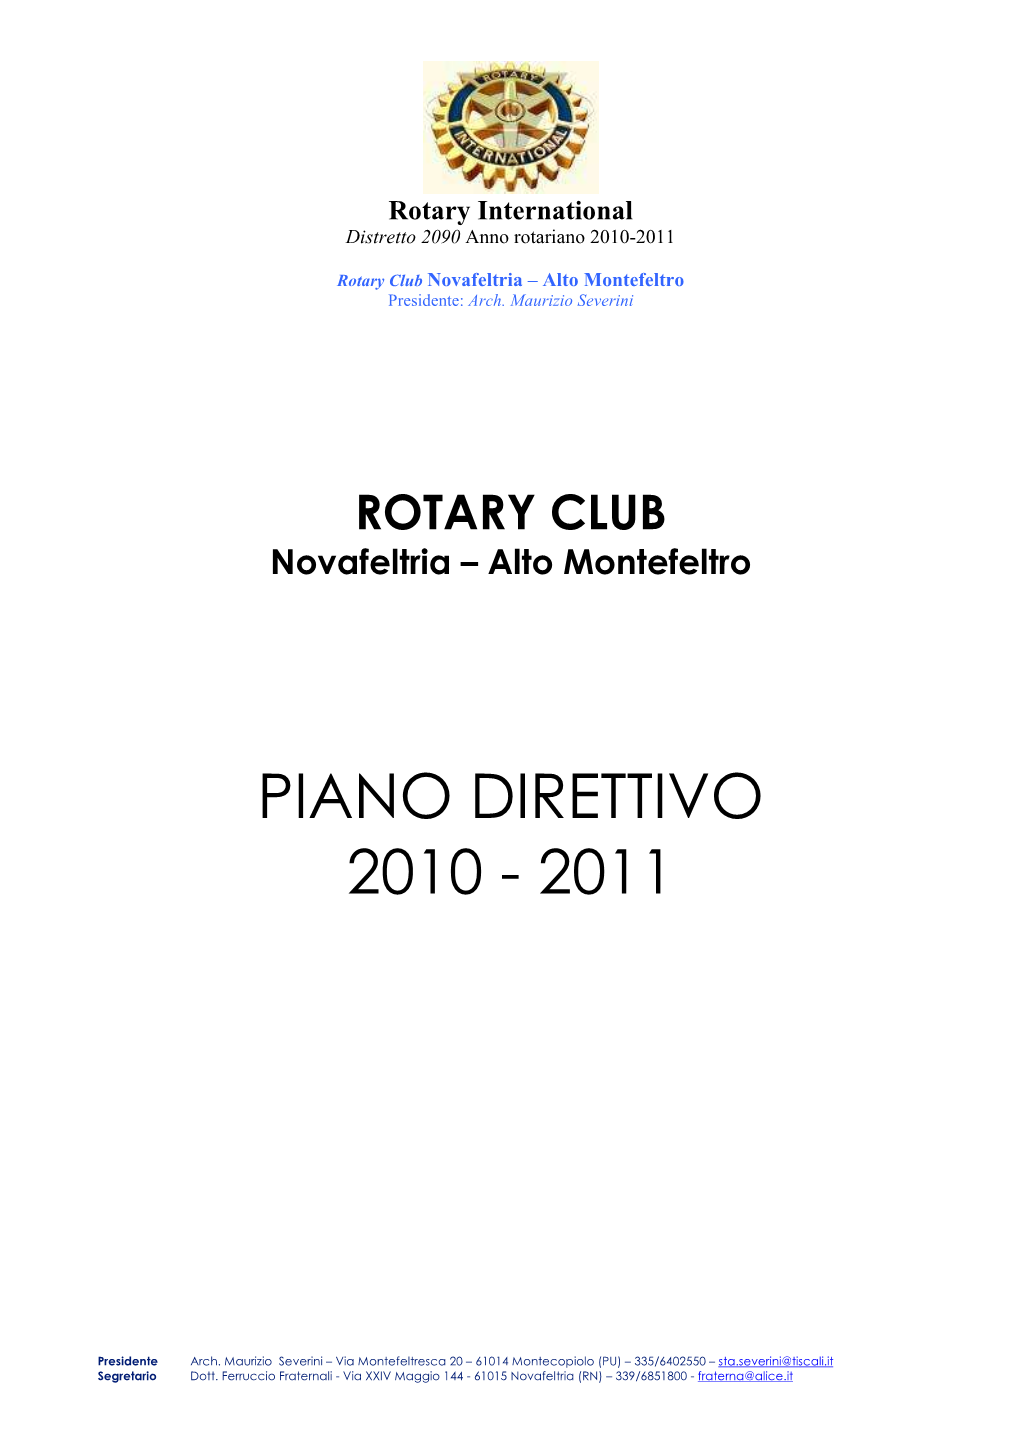 Piano Direttivo 2010 - 2011